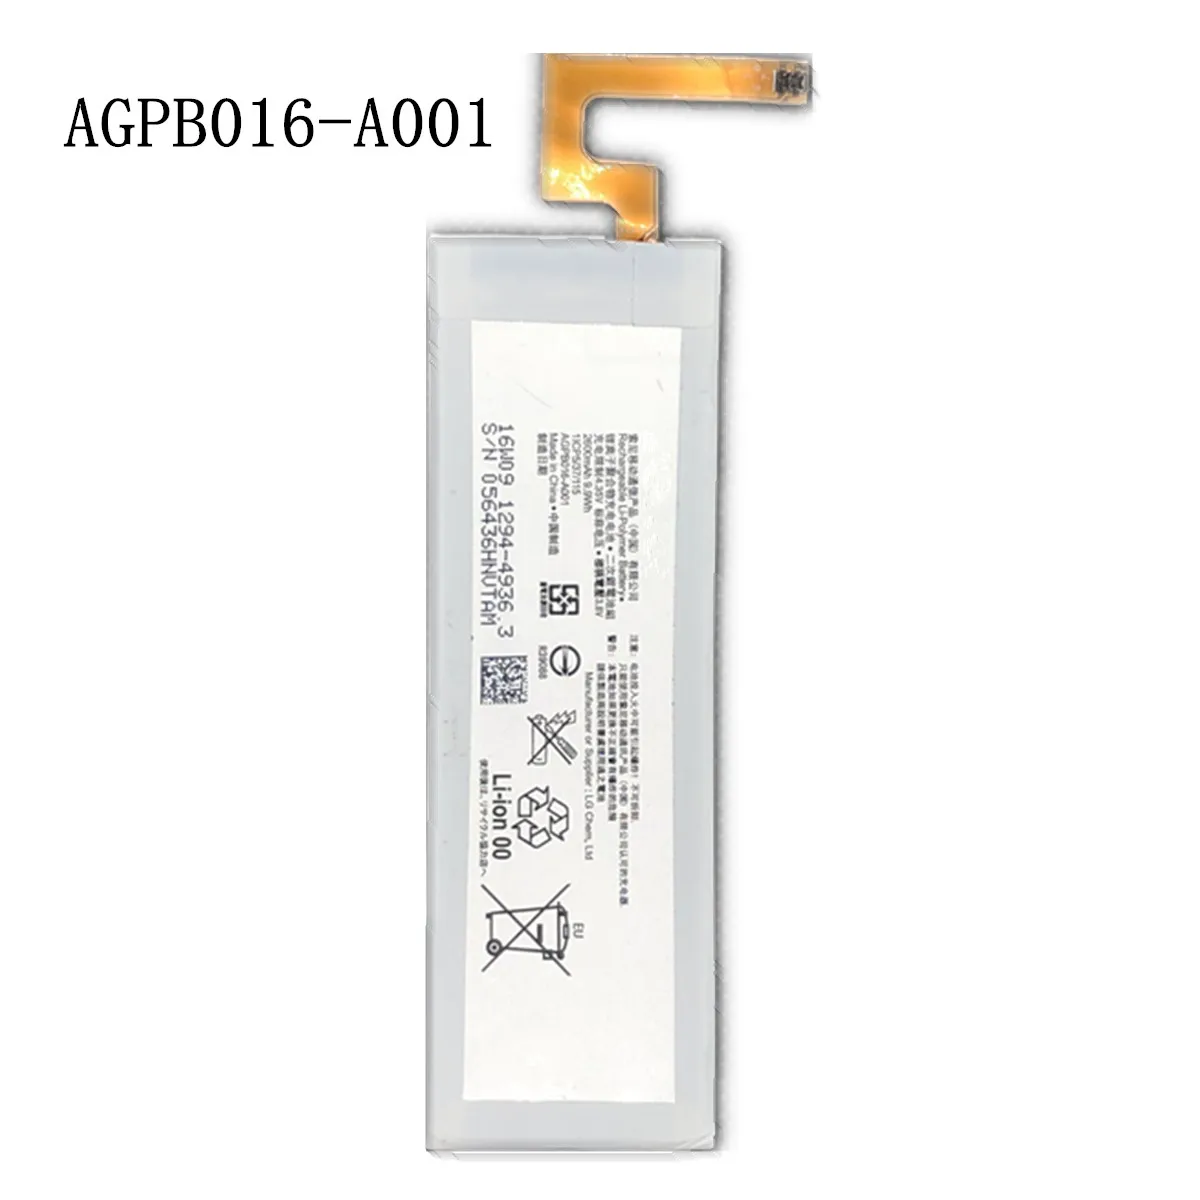 Фото Новый 2600 мА/ч AGPB016-A001 запасная батарея для Sony Cyber-shot Xperia M5 E5603 E5606 E5653 E5633 E5643 E5663 |